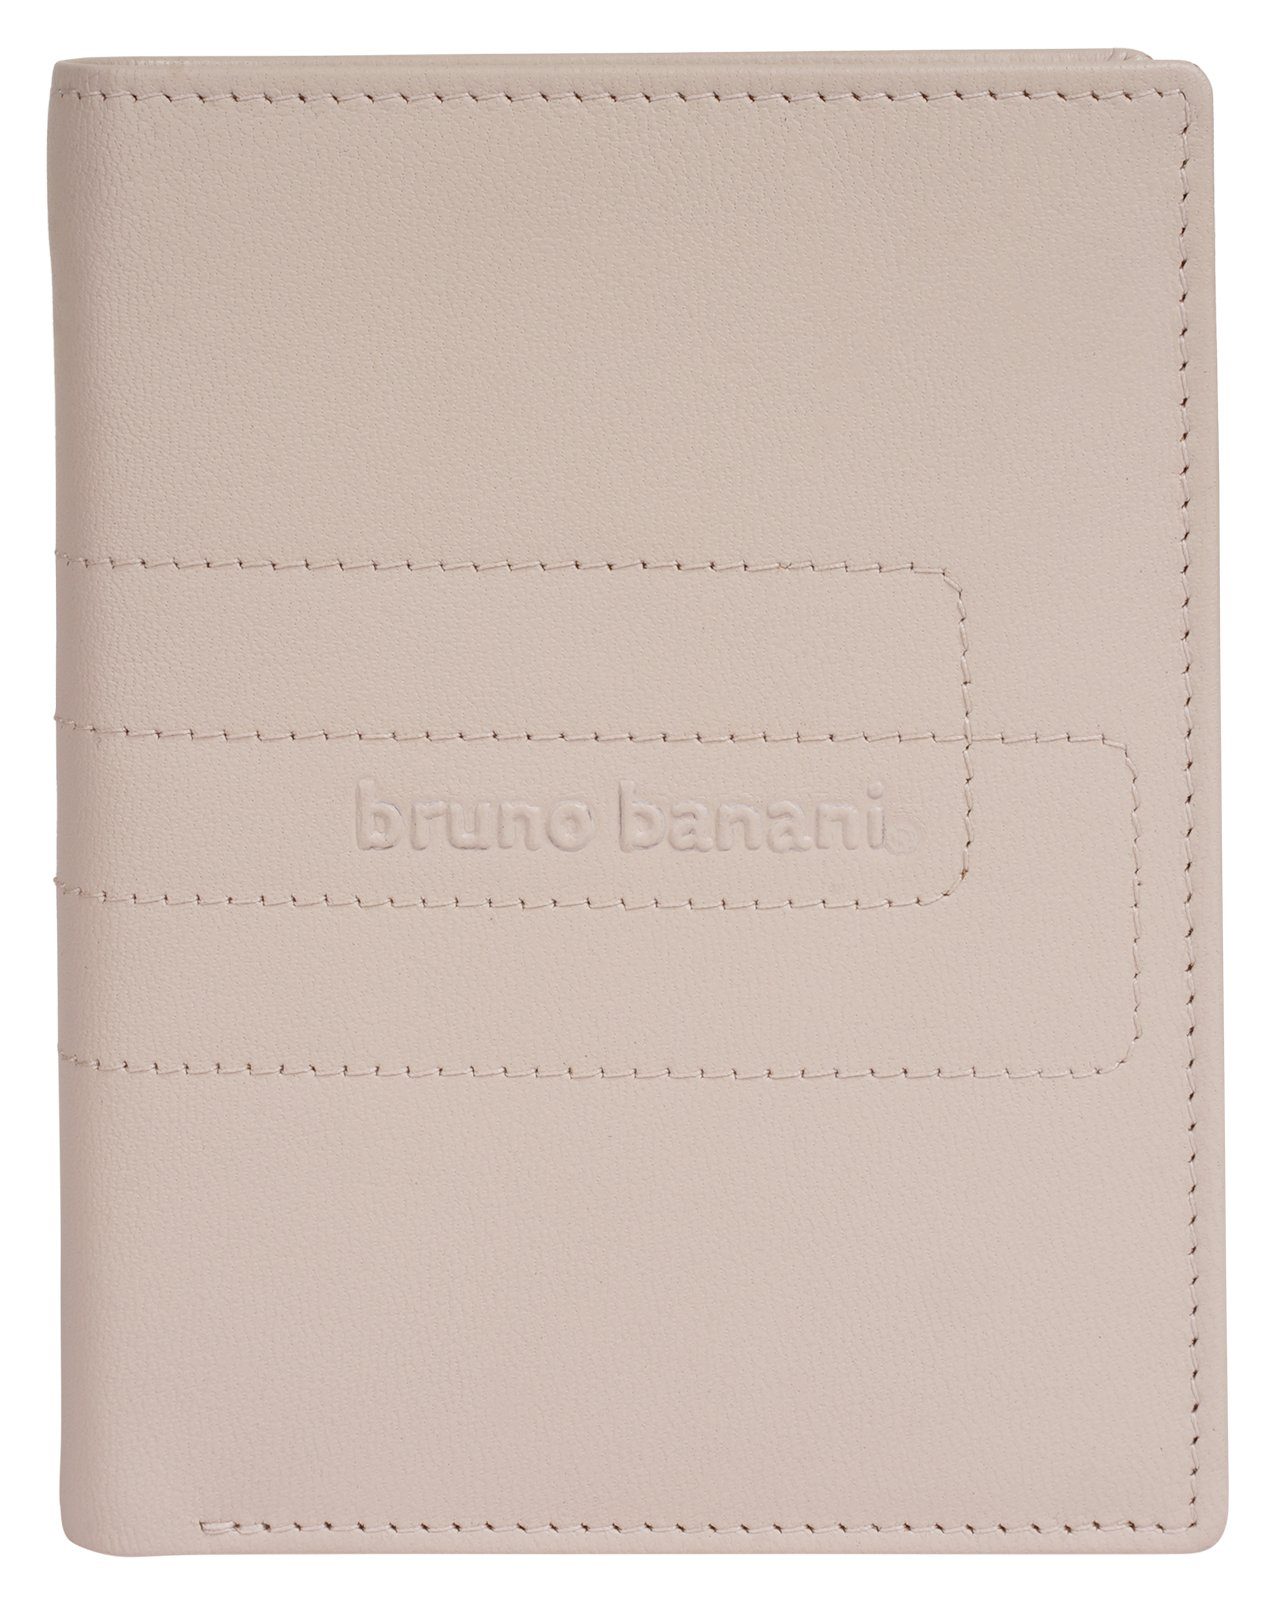 Bruno Banani Geldbörse, echt beige Leder